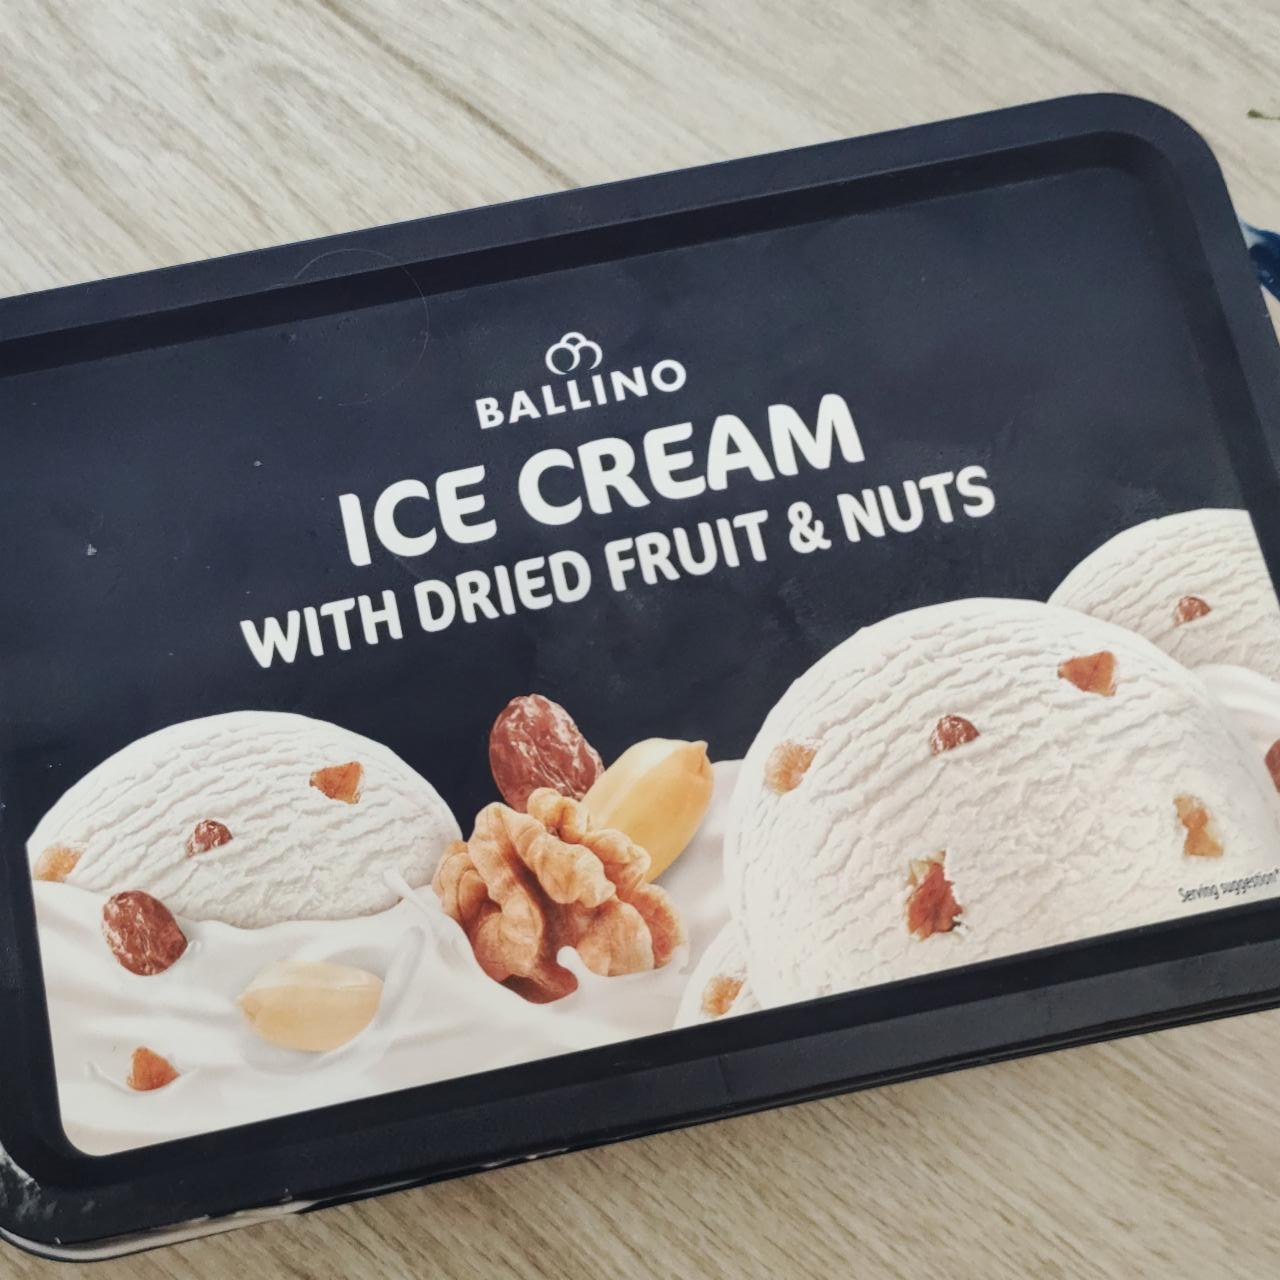 Фото - Морозиво з сухофруктами і горіхами Ice Cream with Dried Fruit & Nuts Ballino